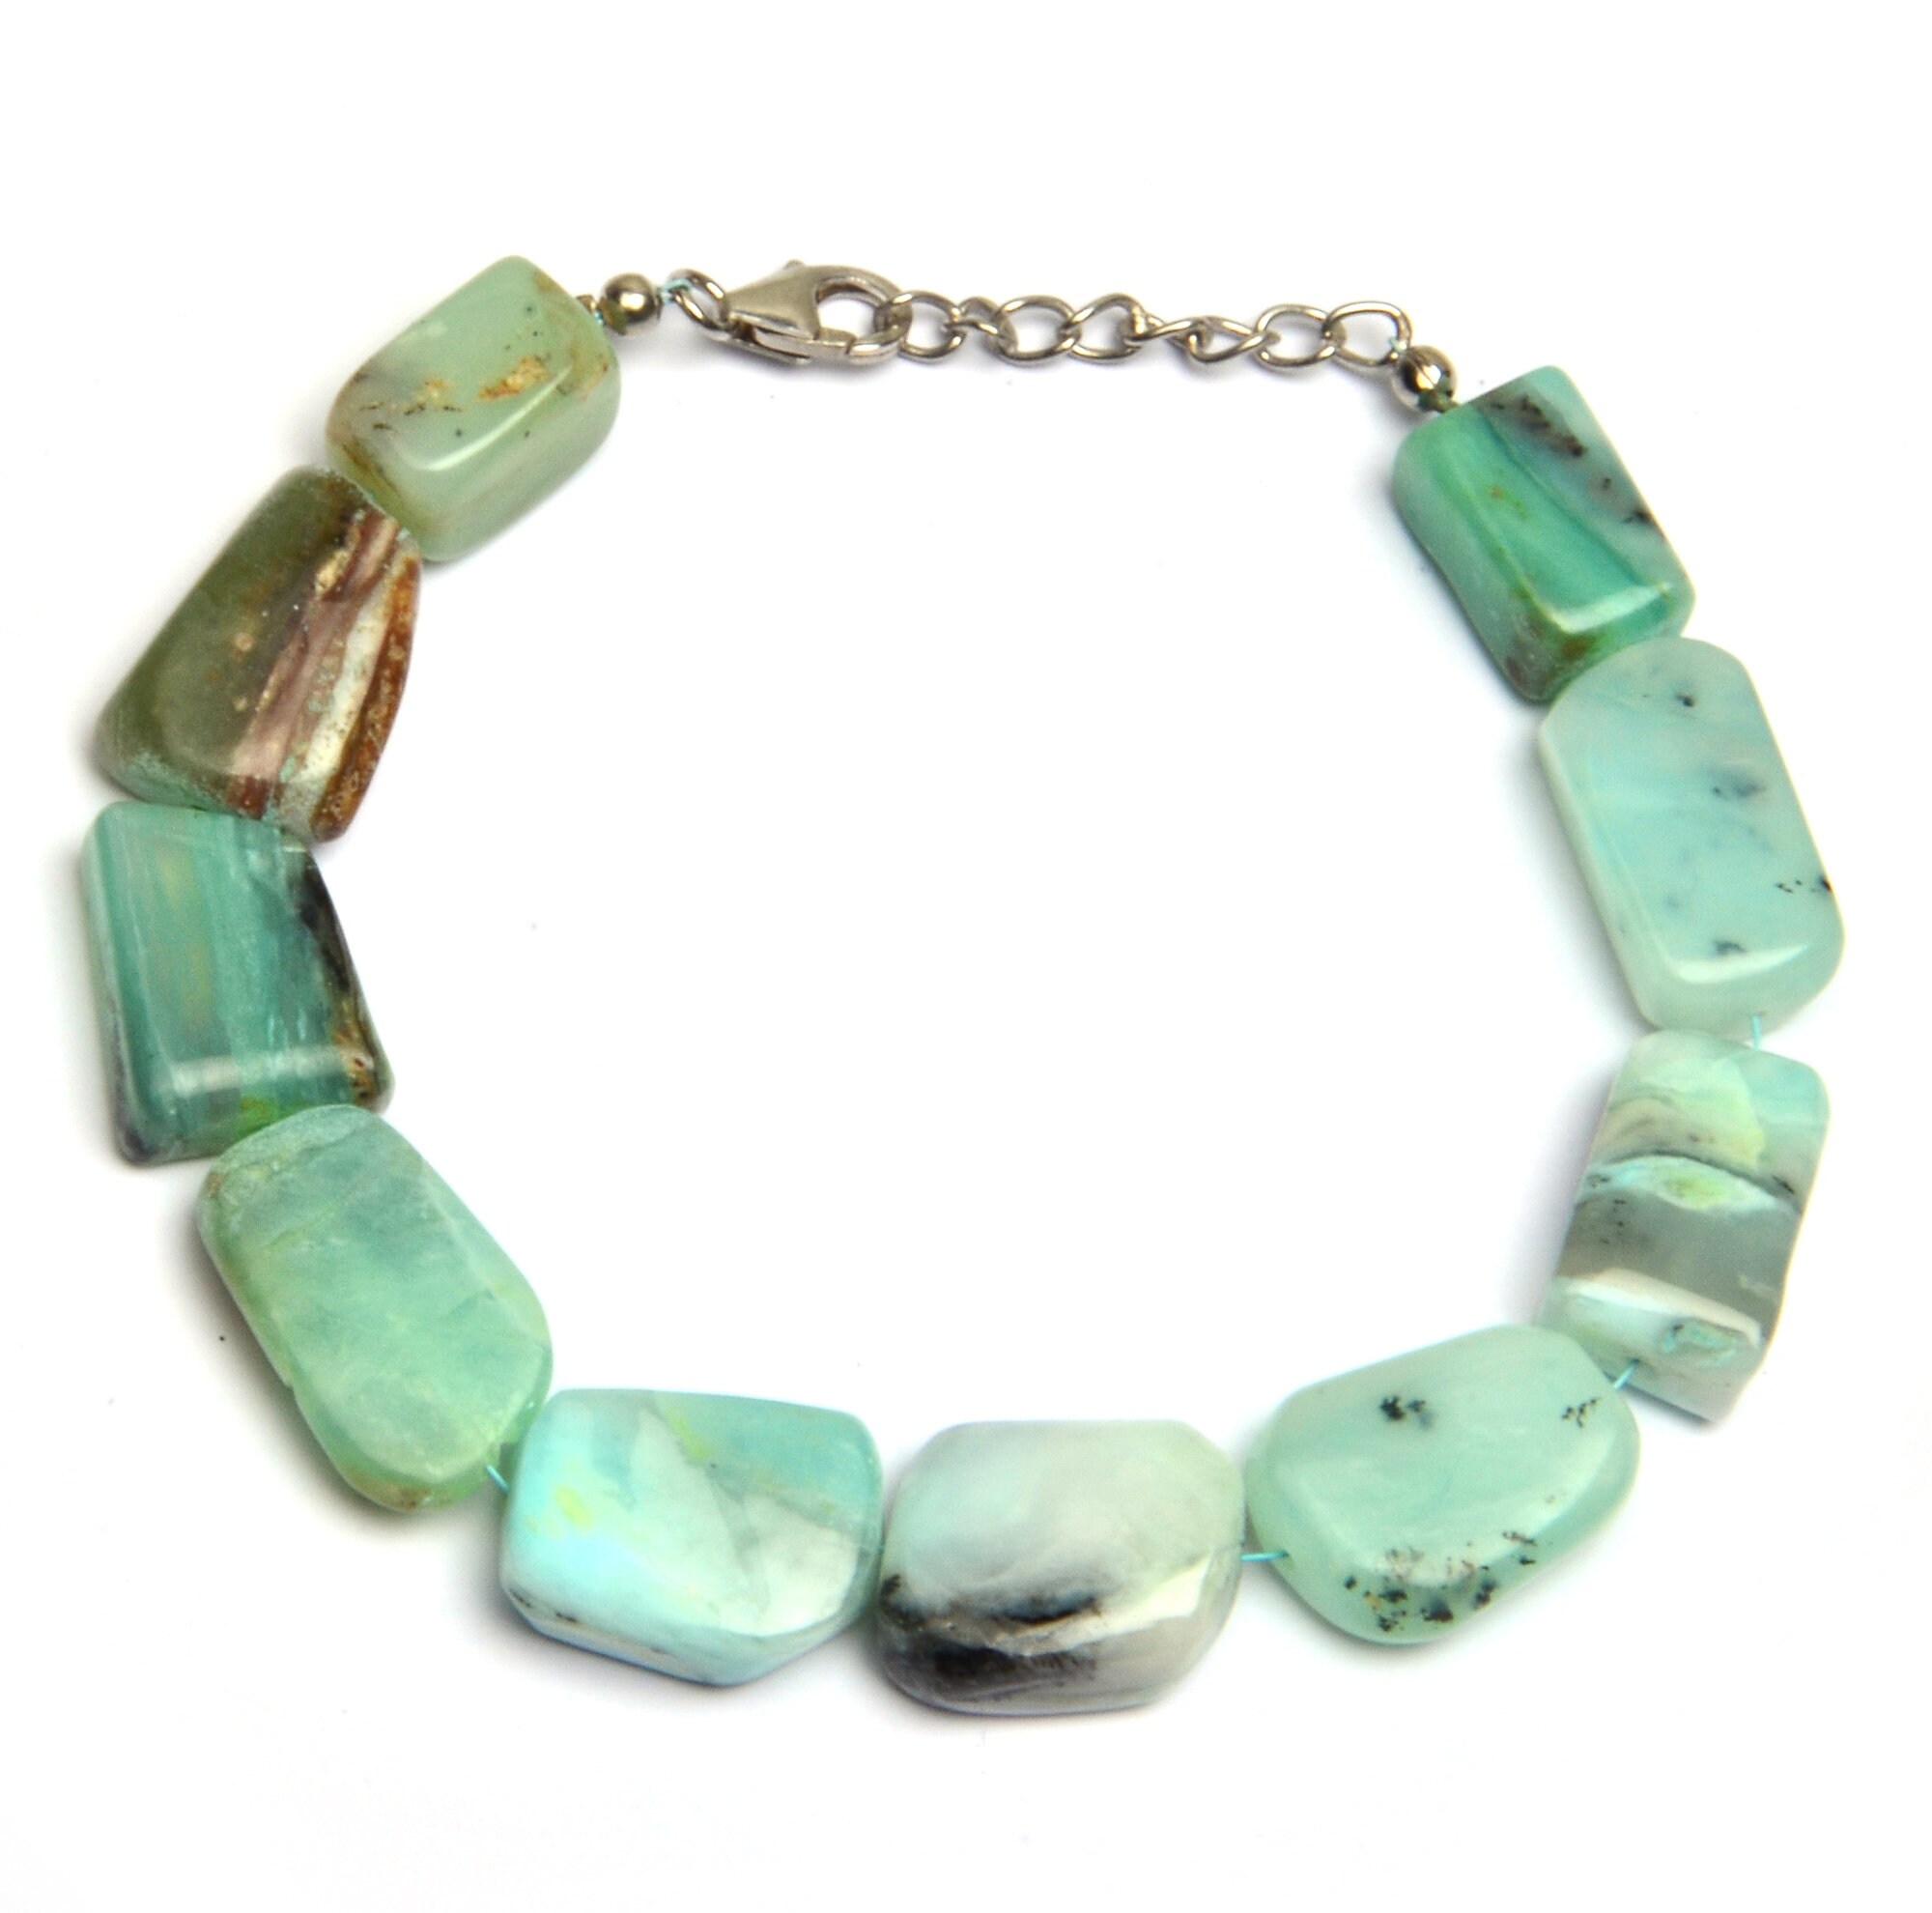 Buy Opal Bracelet Peruvian Blue Opal Mens Jewelry Boho Online in India   Etsy